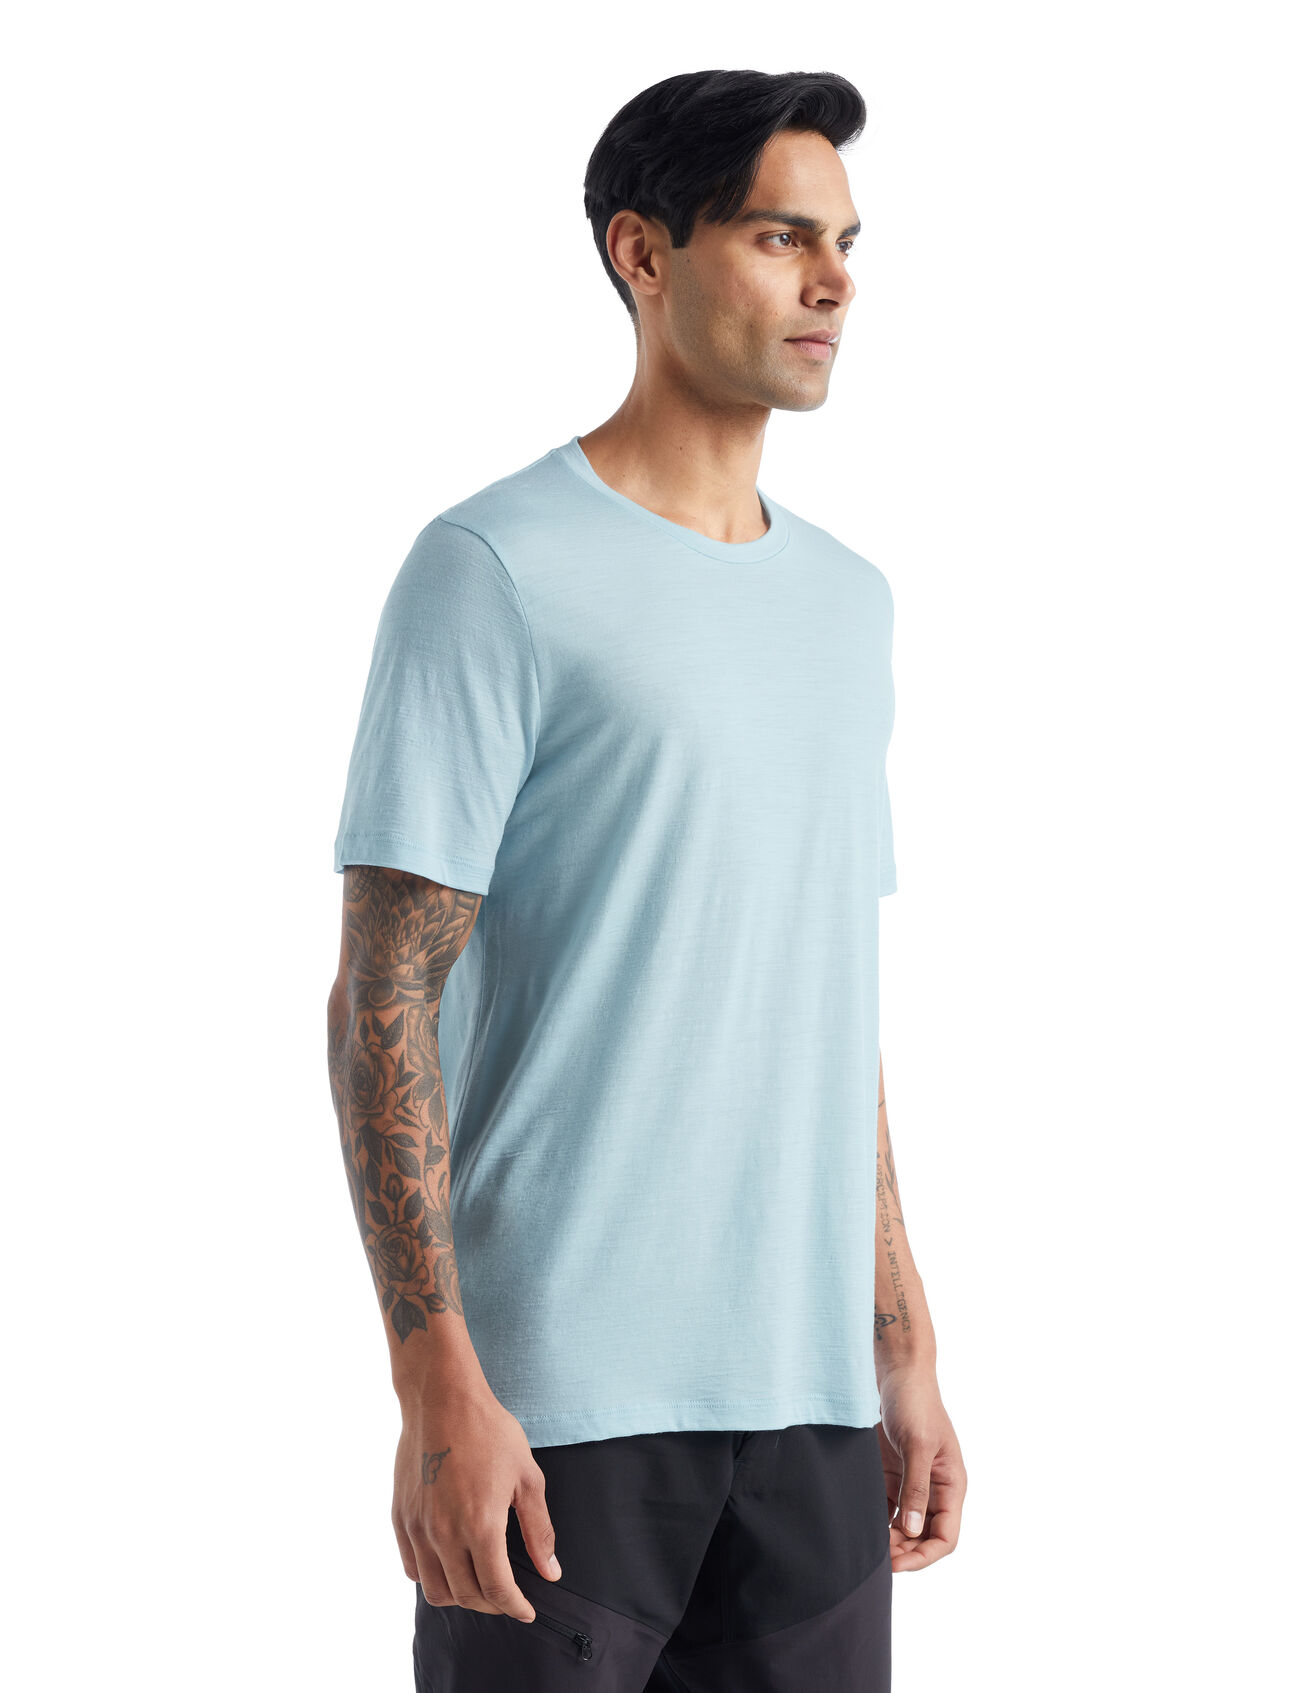 Merino tričko s krátkým rukávem Tech Lite II